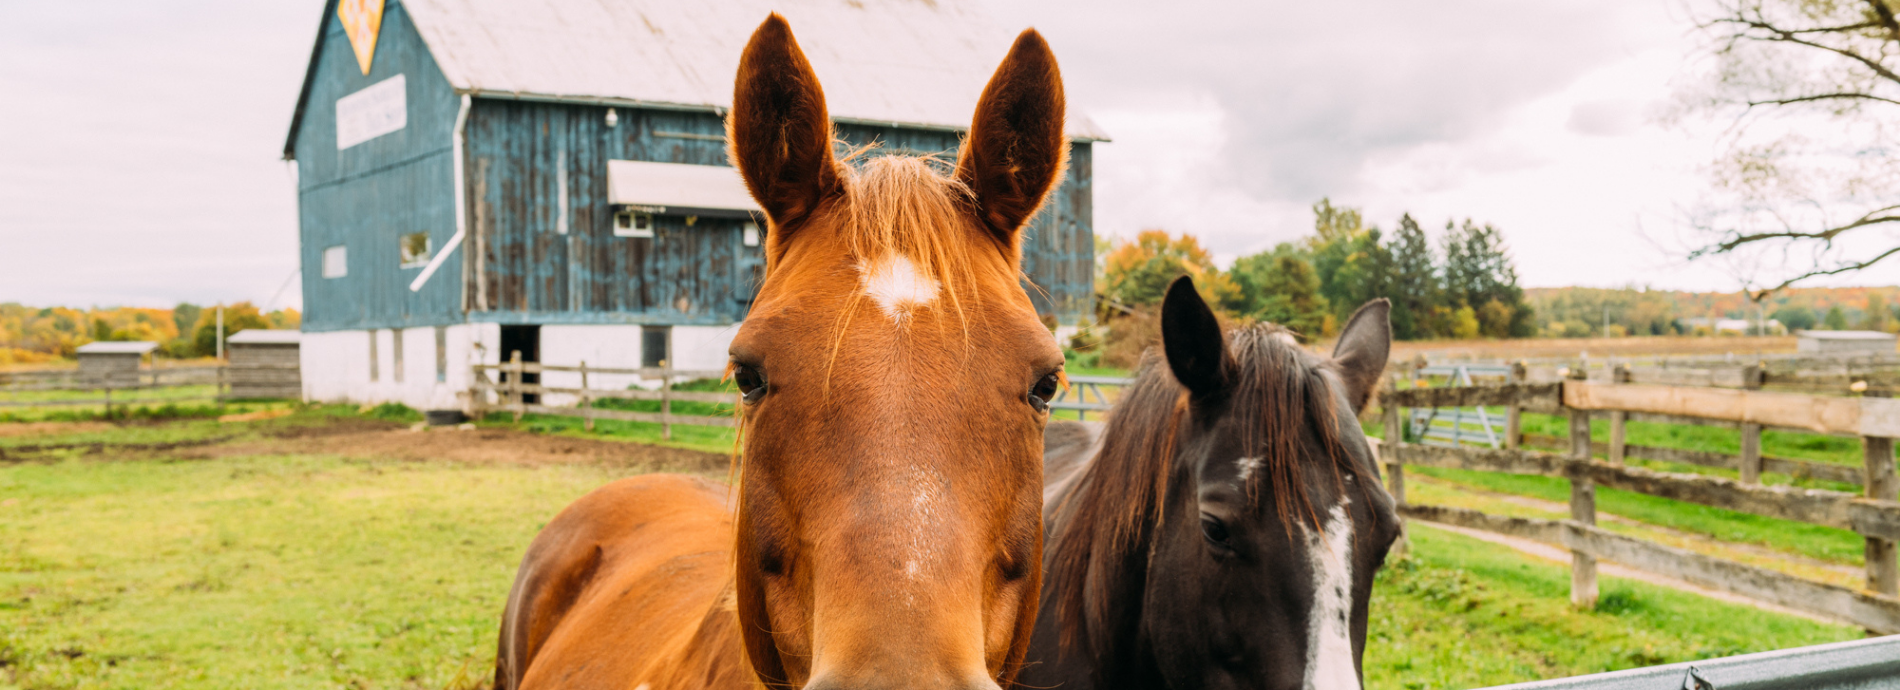 horses alongside a fence